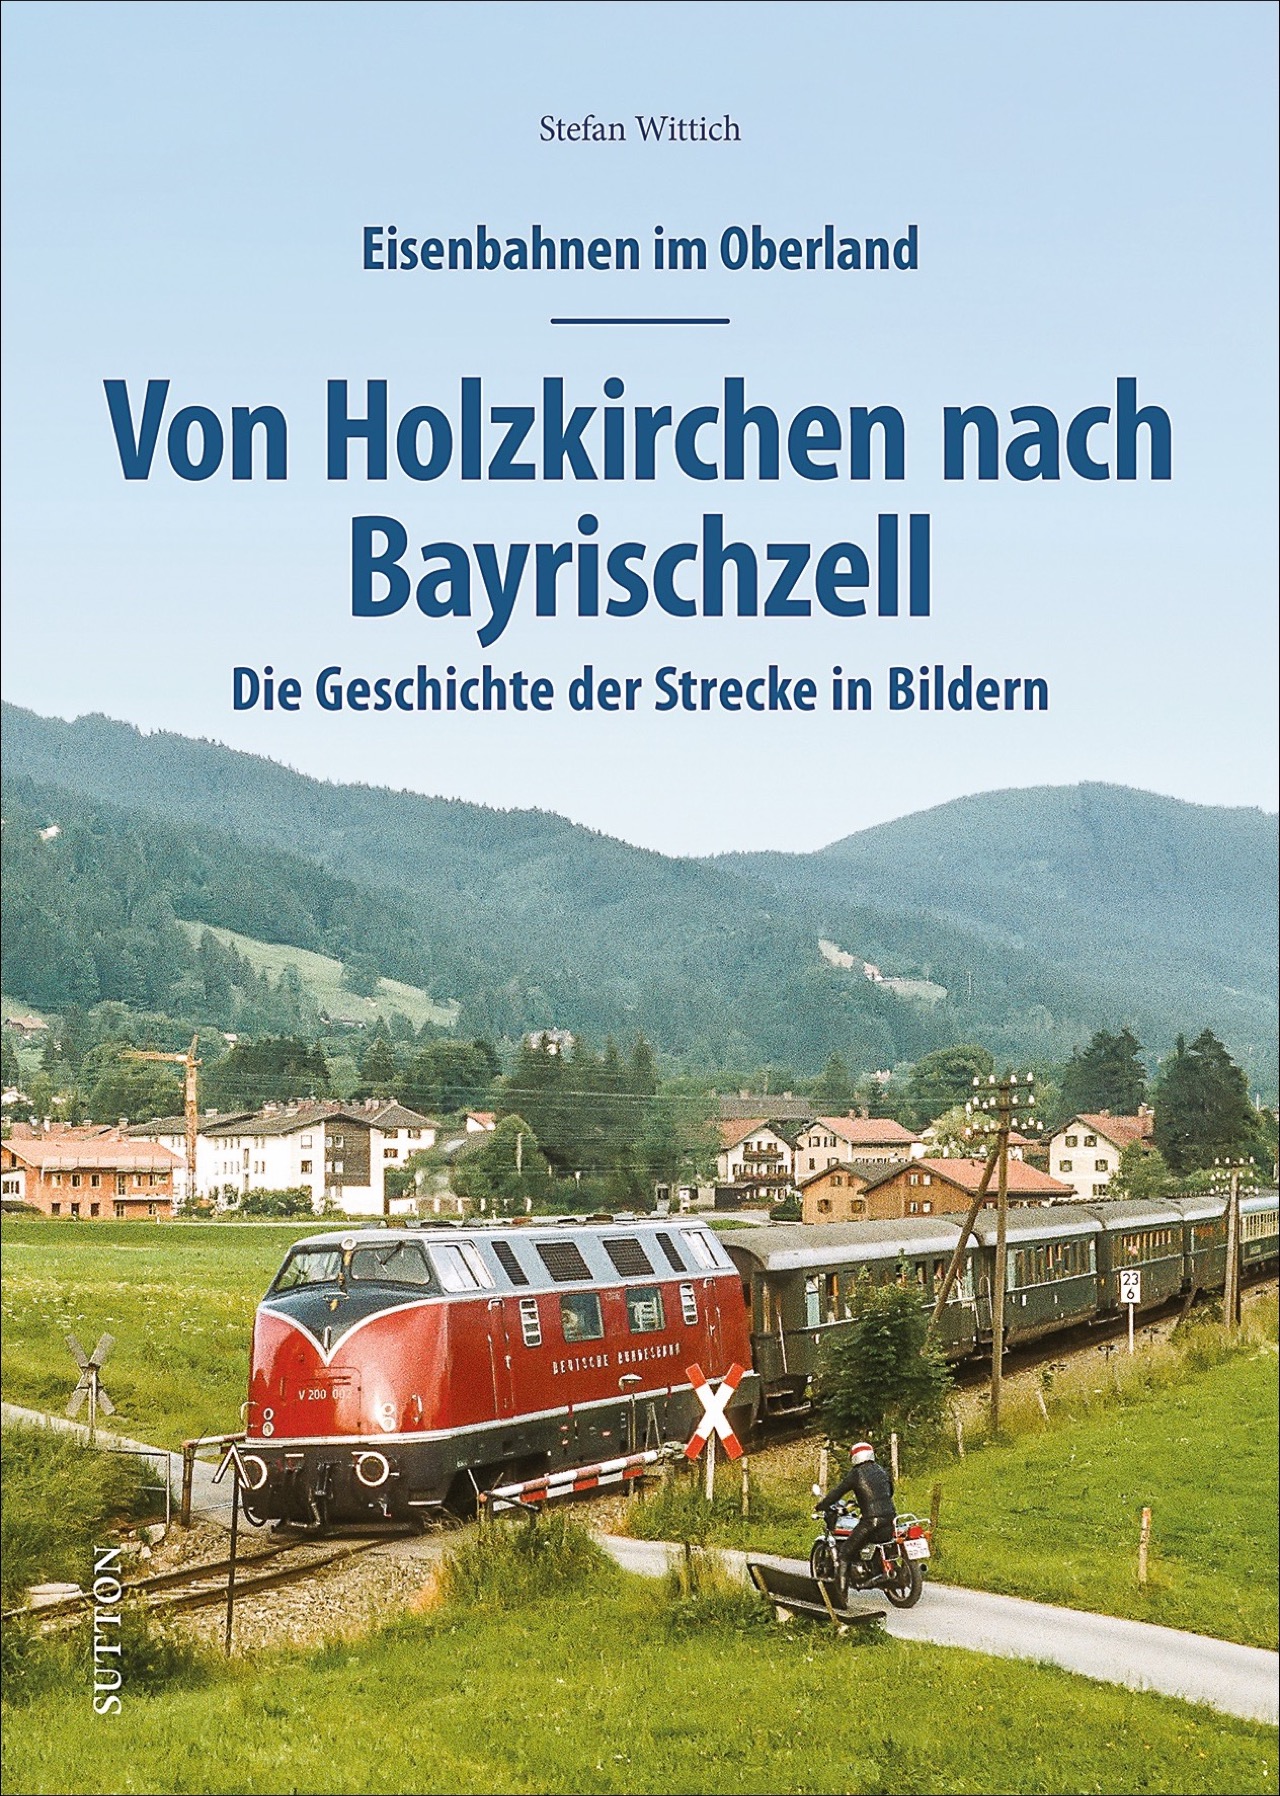 Eisenbahnen im Oberland: Von Holzkirchen nach Bayrischzell